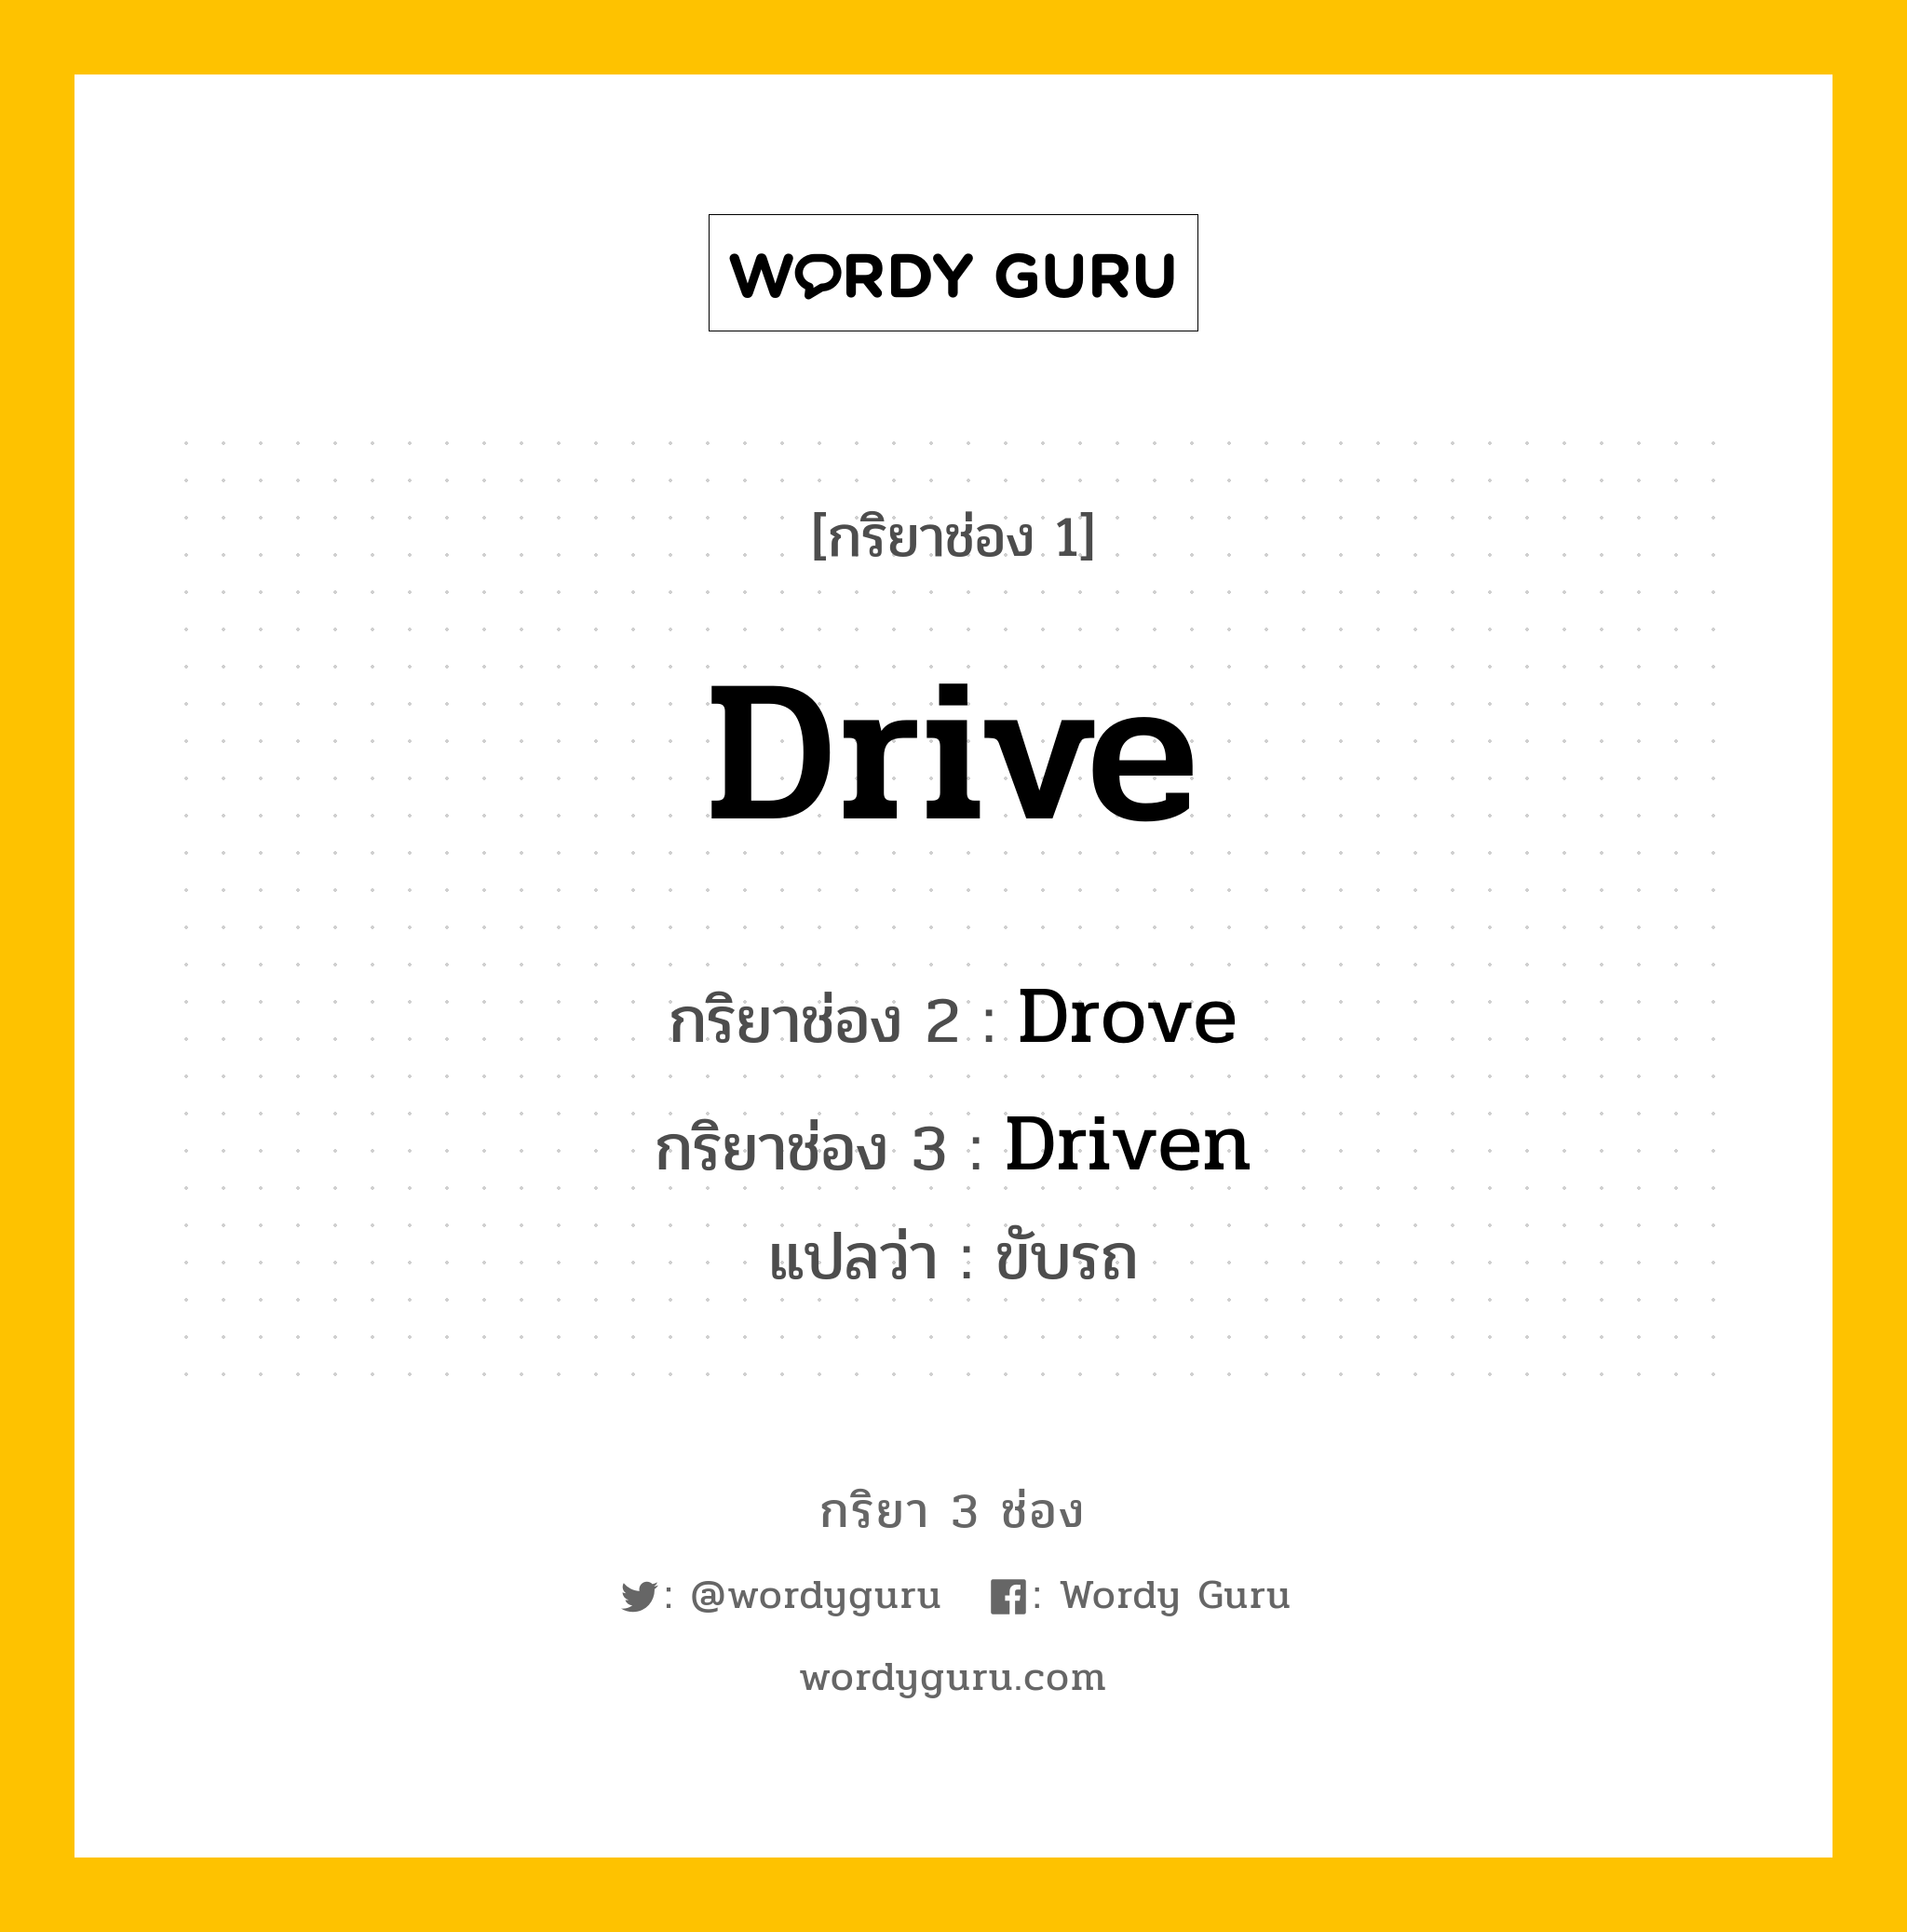 กริยา 3 ช่อง: Drive ช่อง 2 Drive ช่อง 3 คืออะไร, กริยาช่อง 1 Drive กริยาช่อง 2 Drove กริยาช่อง 3 Driven แปลว่า ขับรถ หมวด Irregular Verb